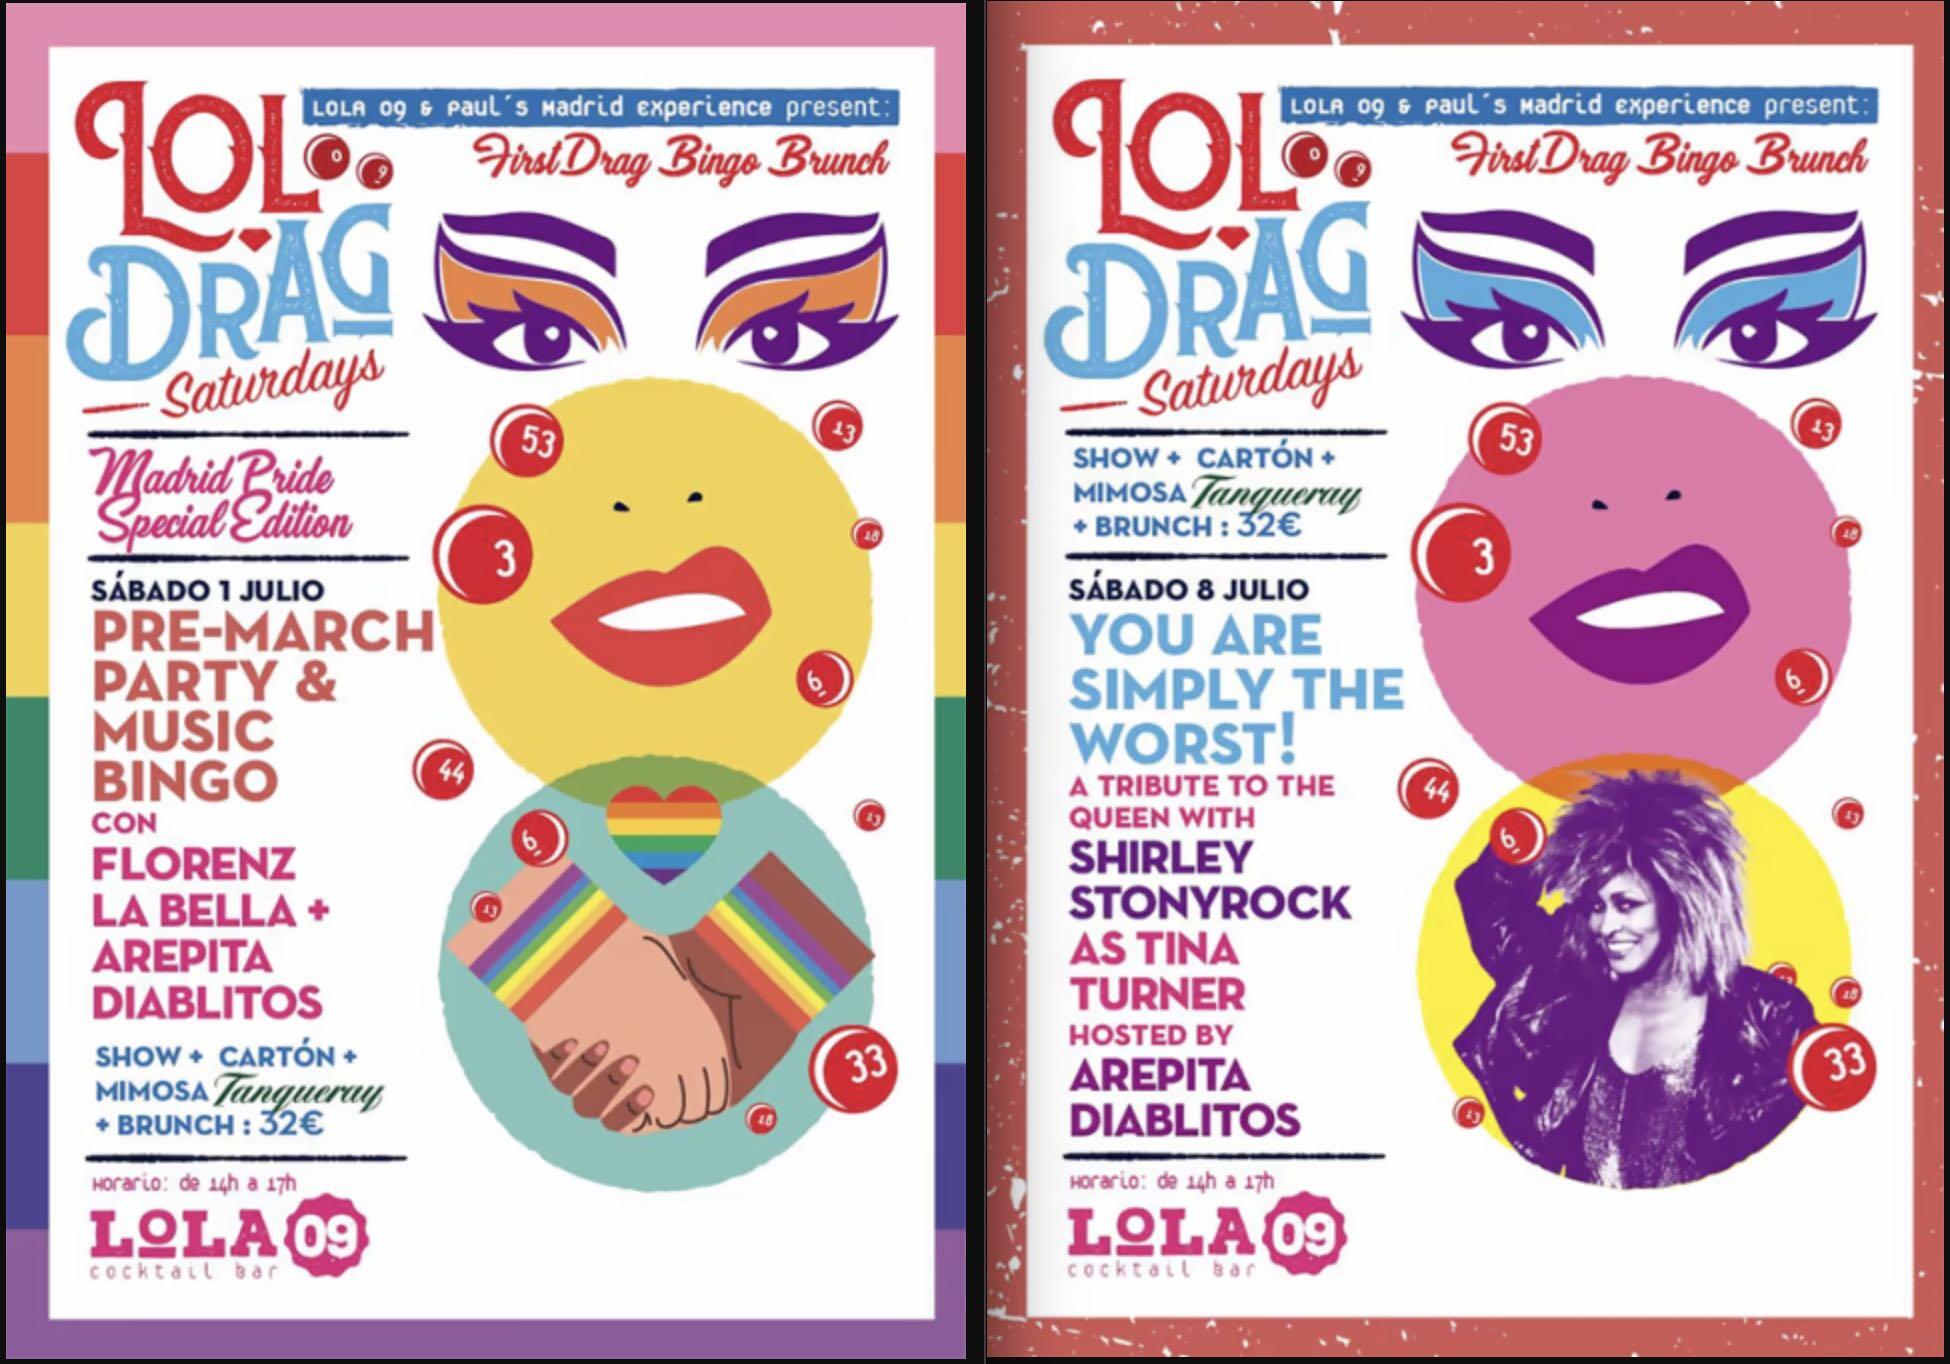 Carteles de los Drag Saturdays de Lola 49